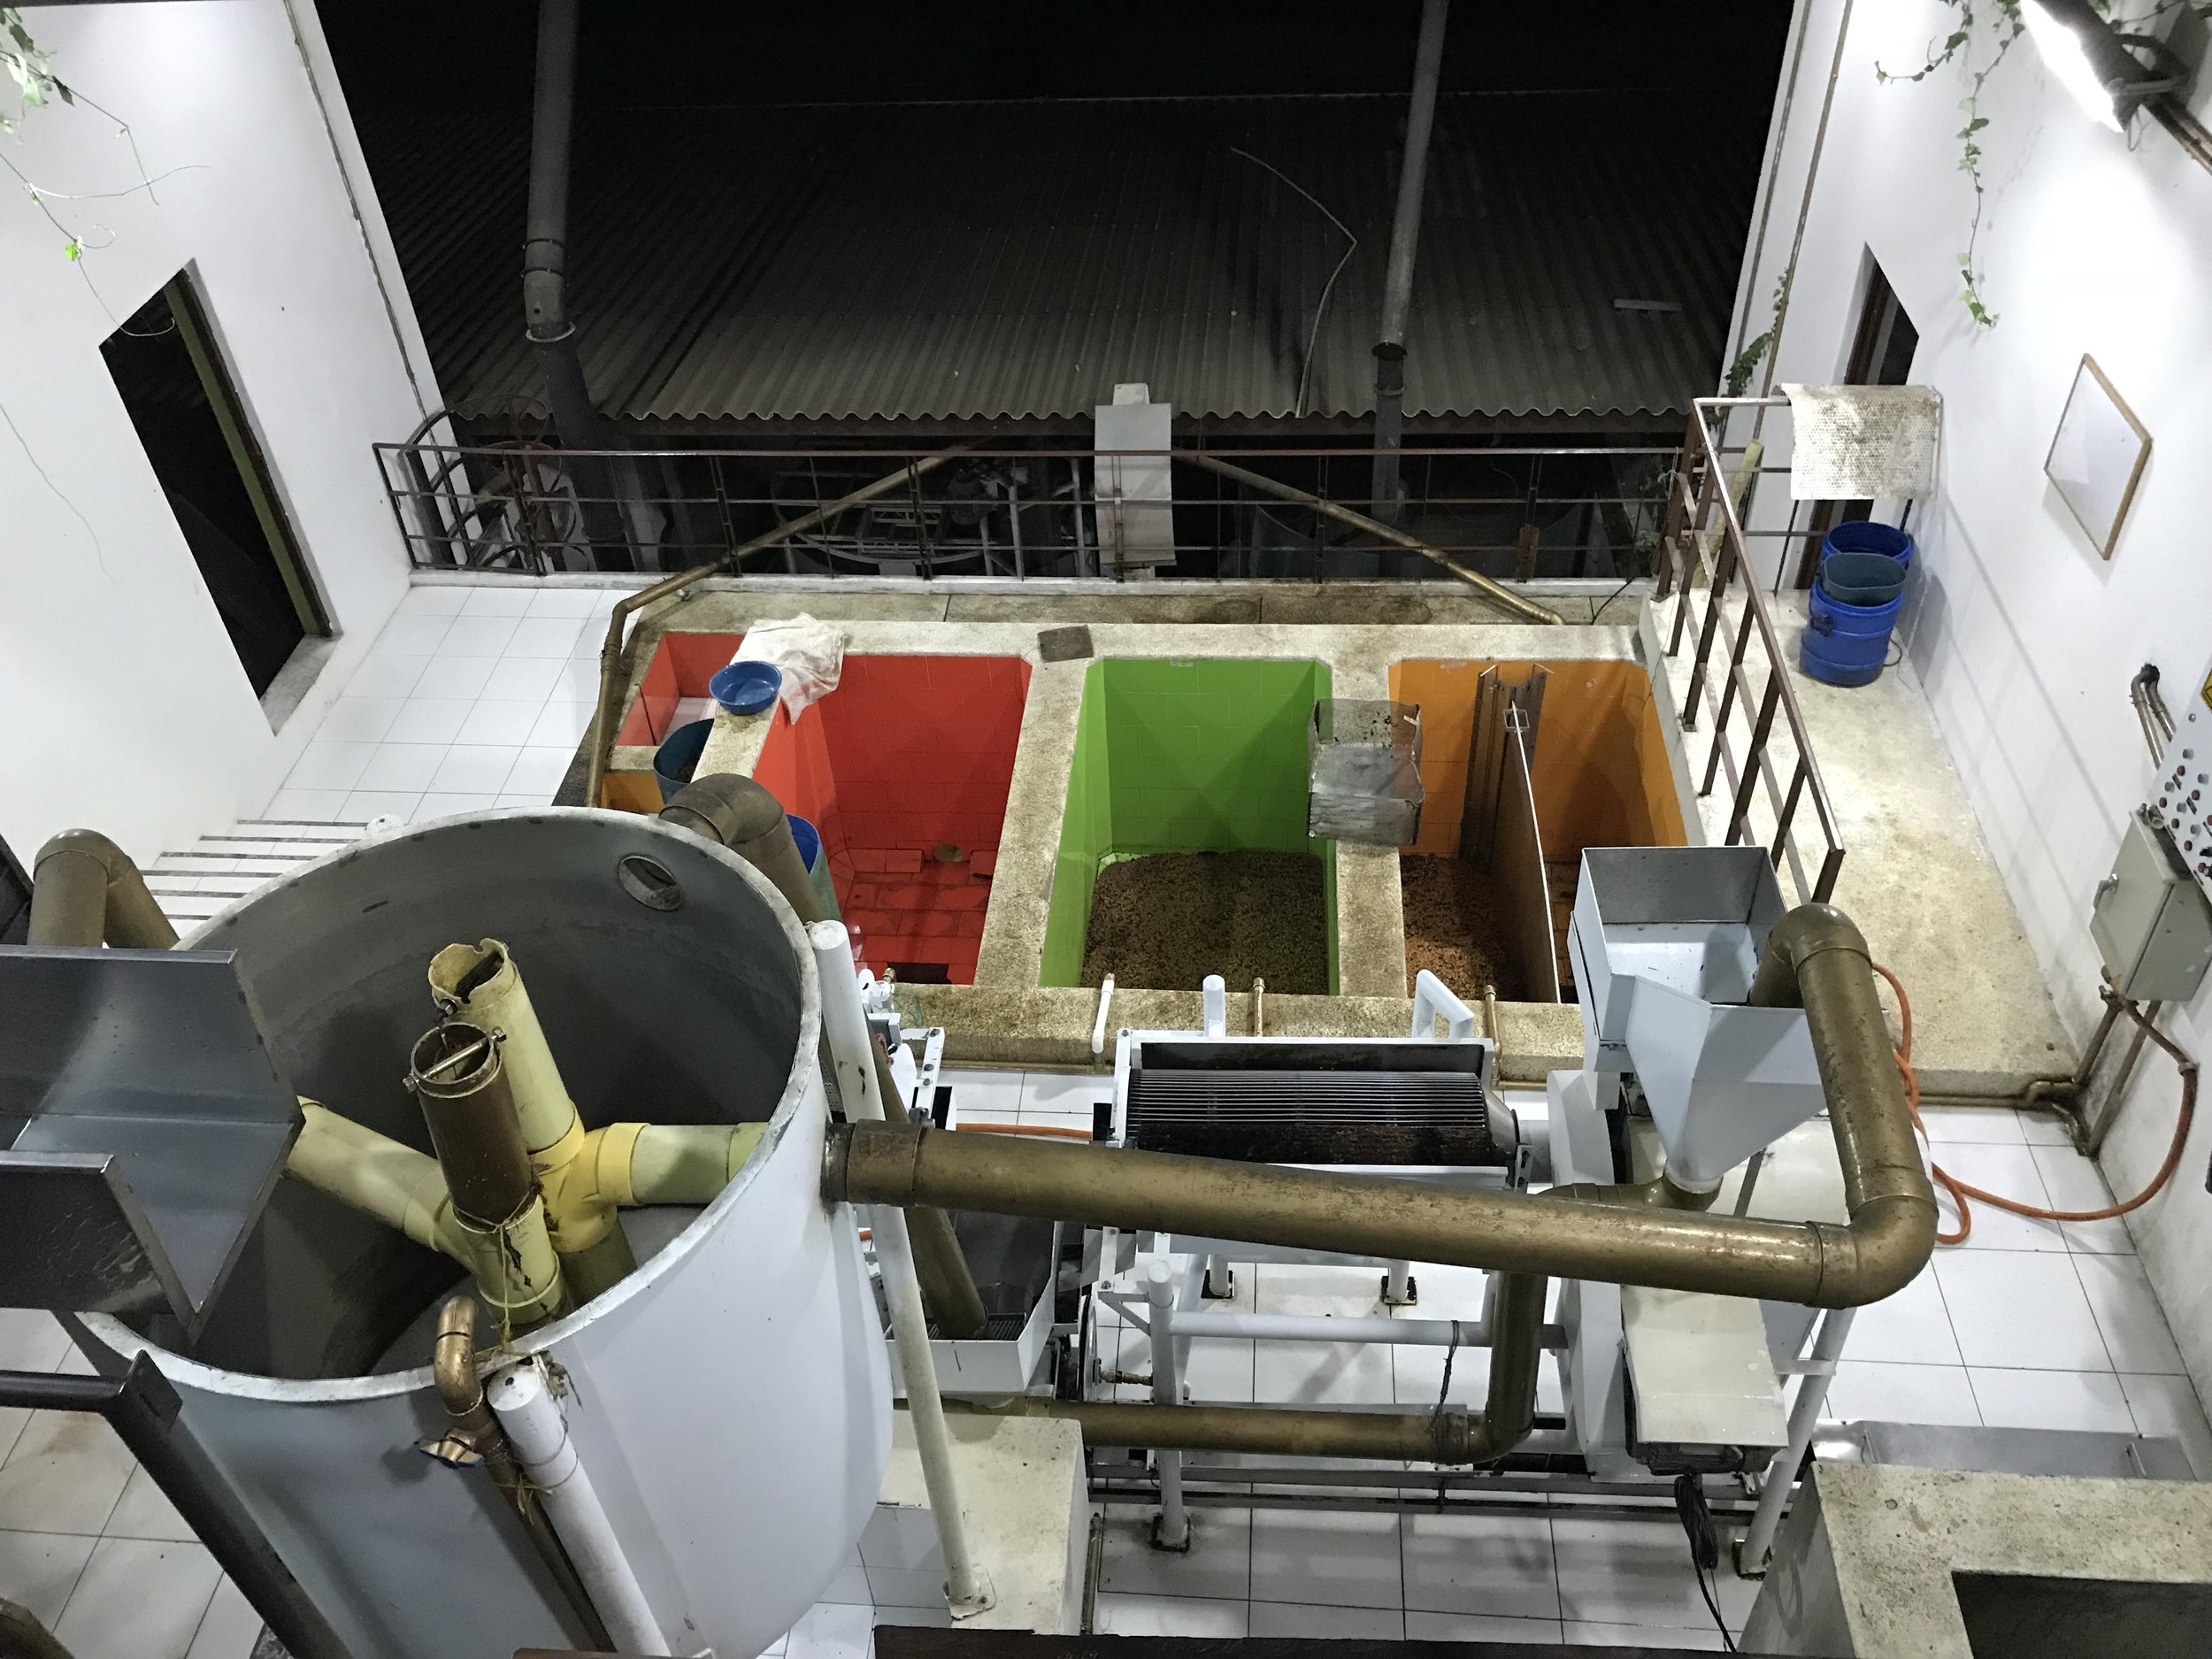 Processing facilities at La Palma y El Tucan